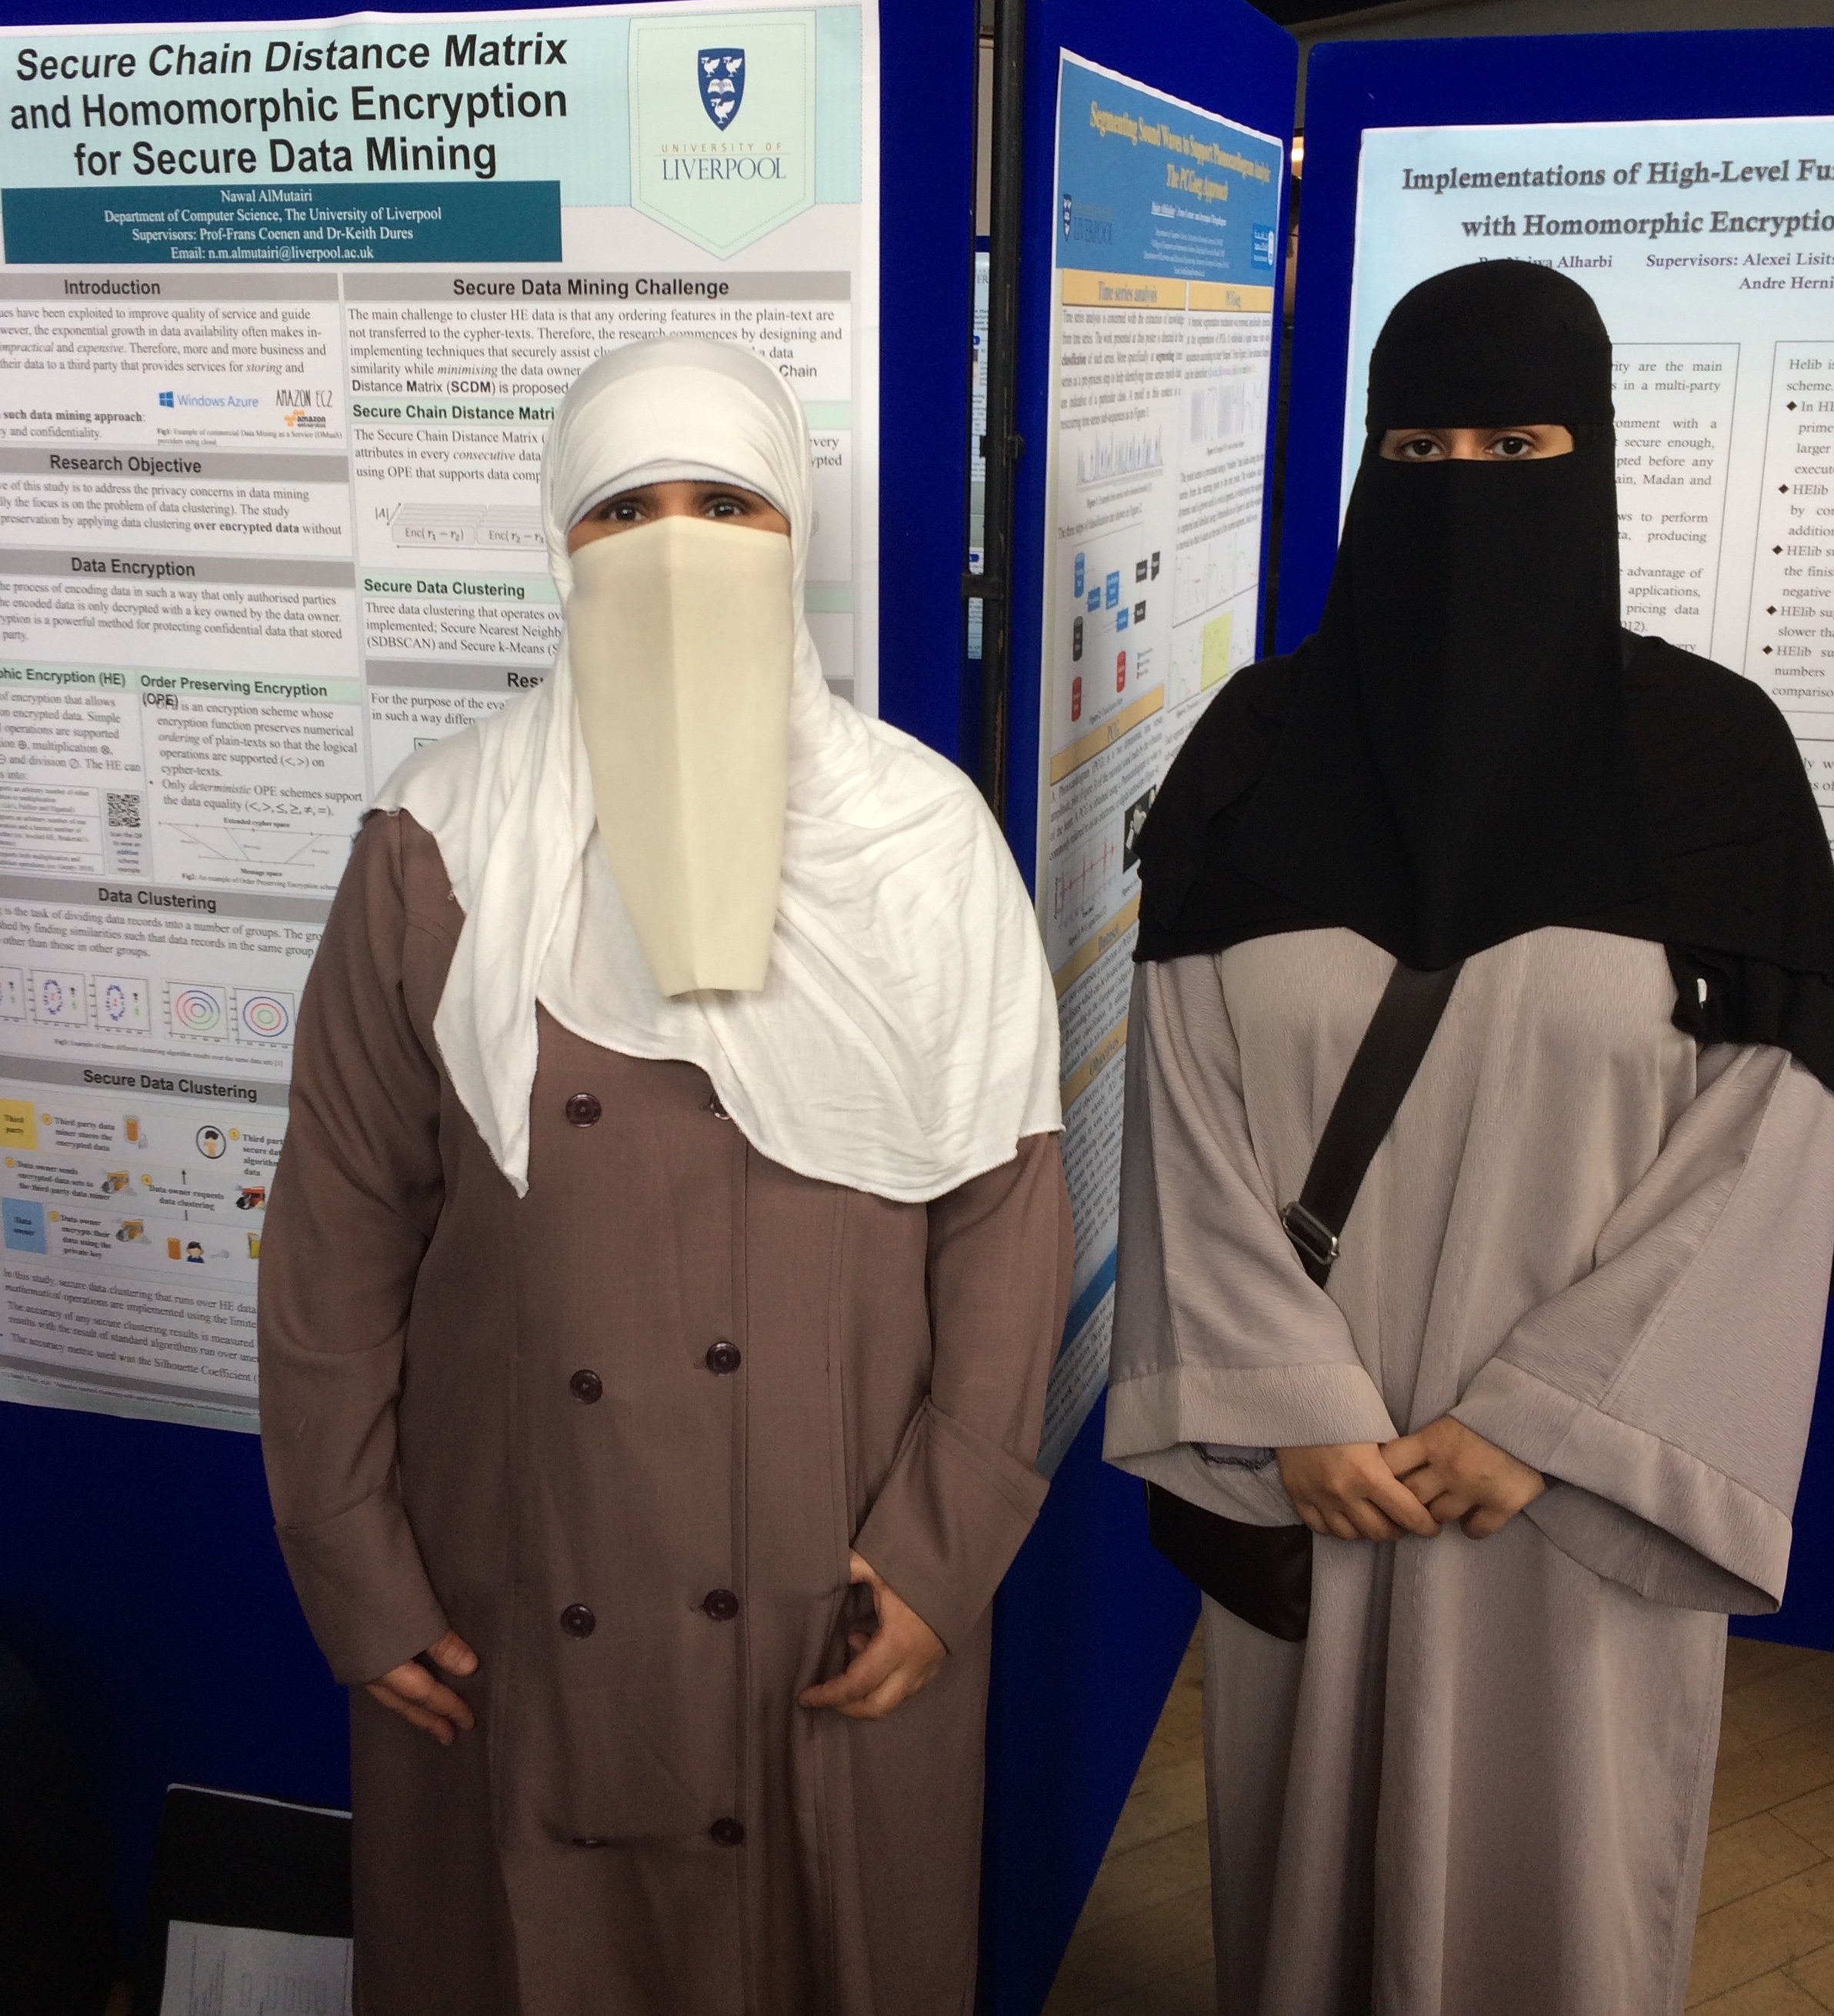 PhD students Hajar Alhijailan and Nawal Almutairi